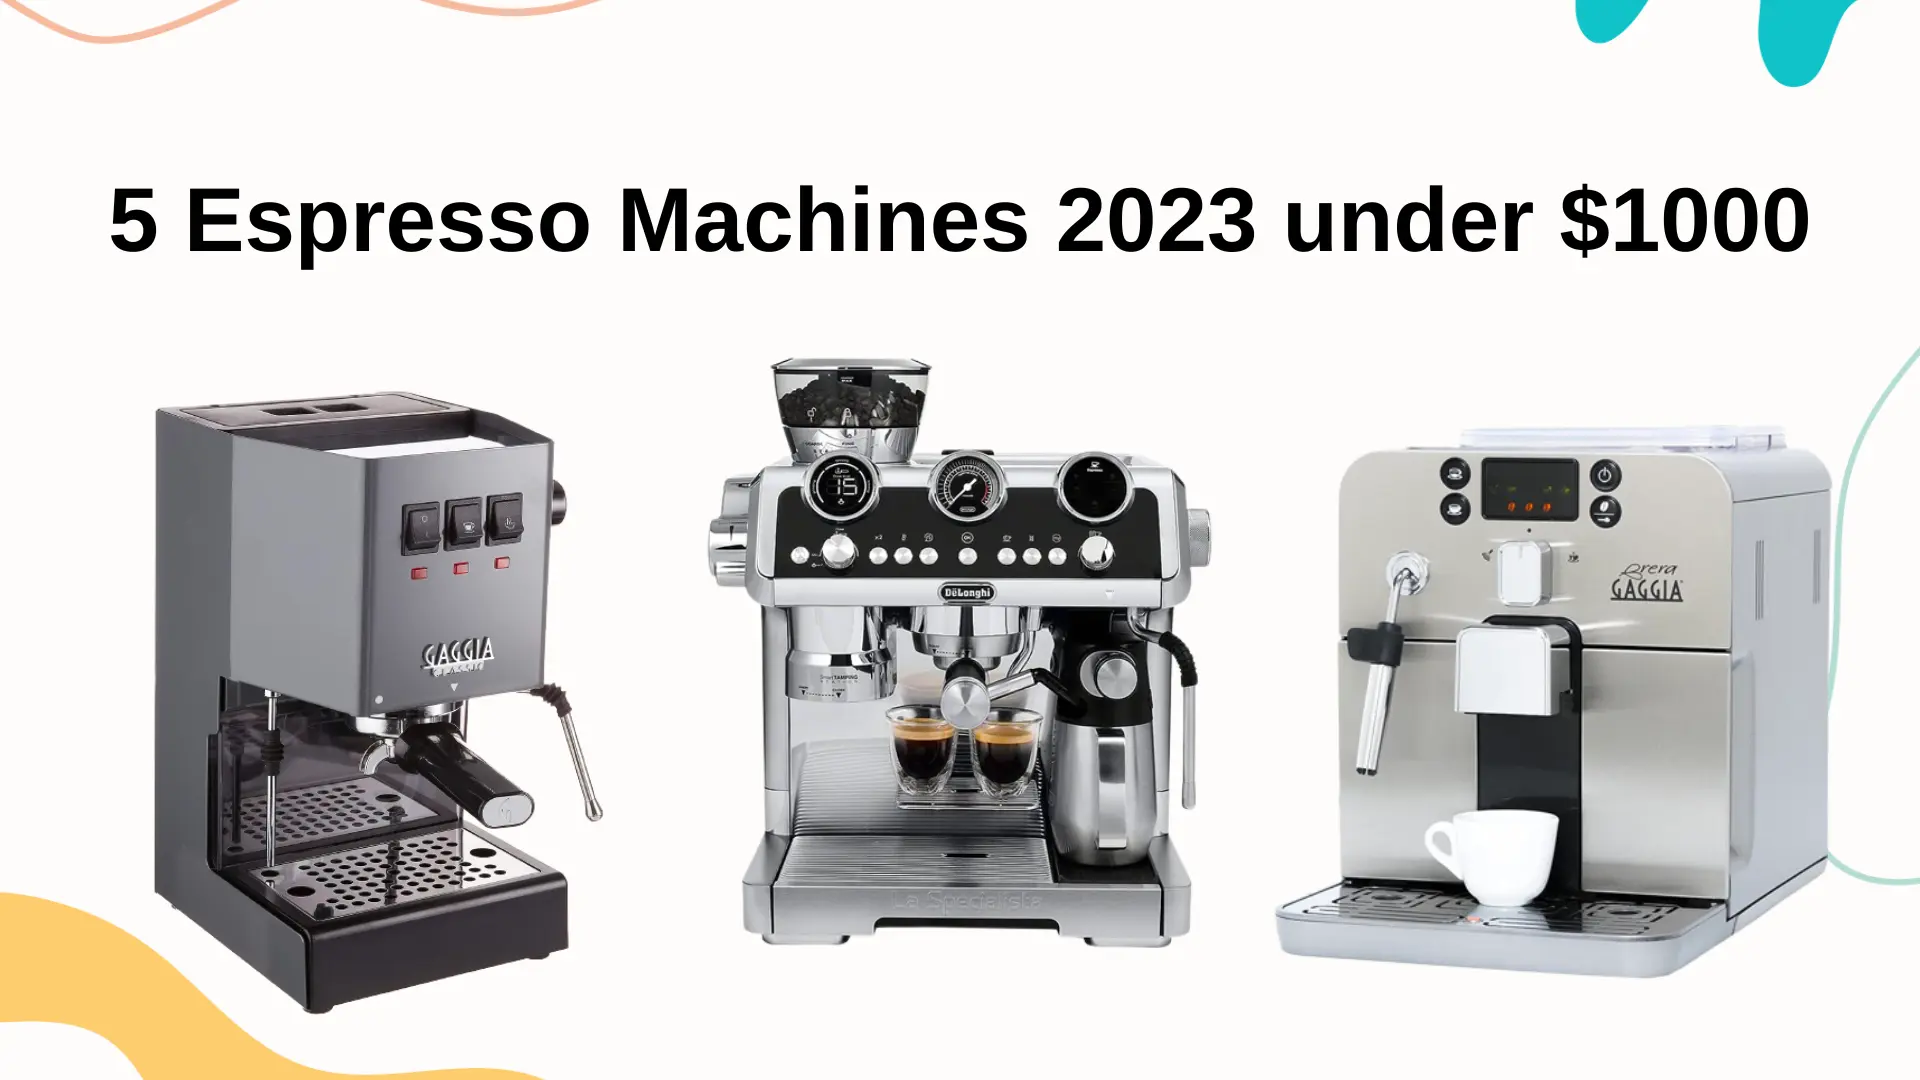 5 Espresso Machines 2023 under $1000